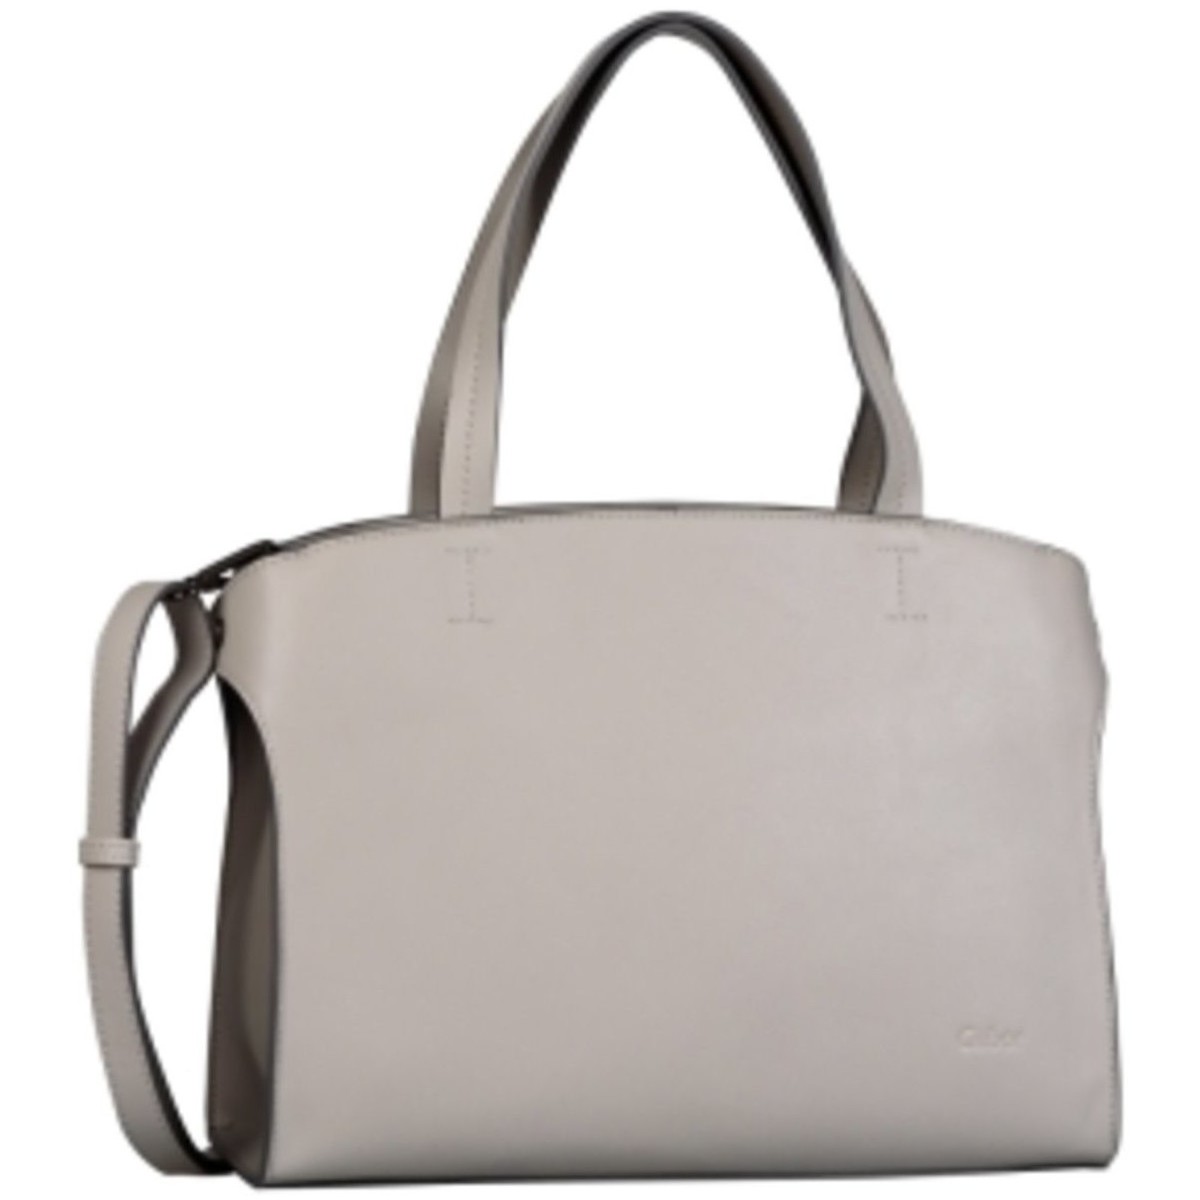 Taschen Damen Handtasche Beheim Mode Accessoires MELINA Shopper, light grey 8662 72 Grau